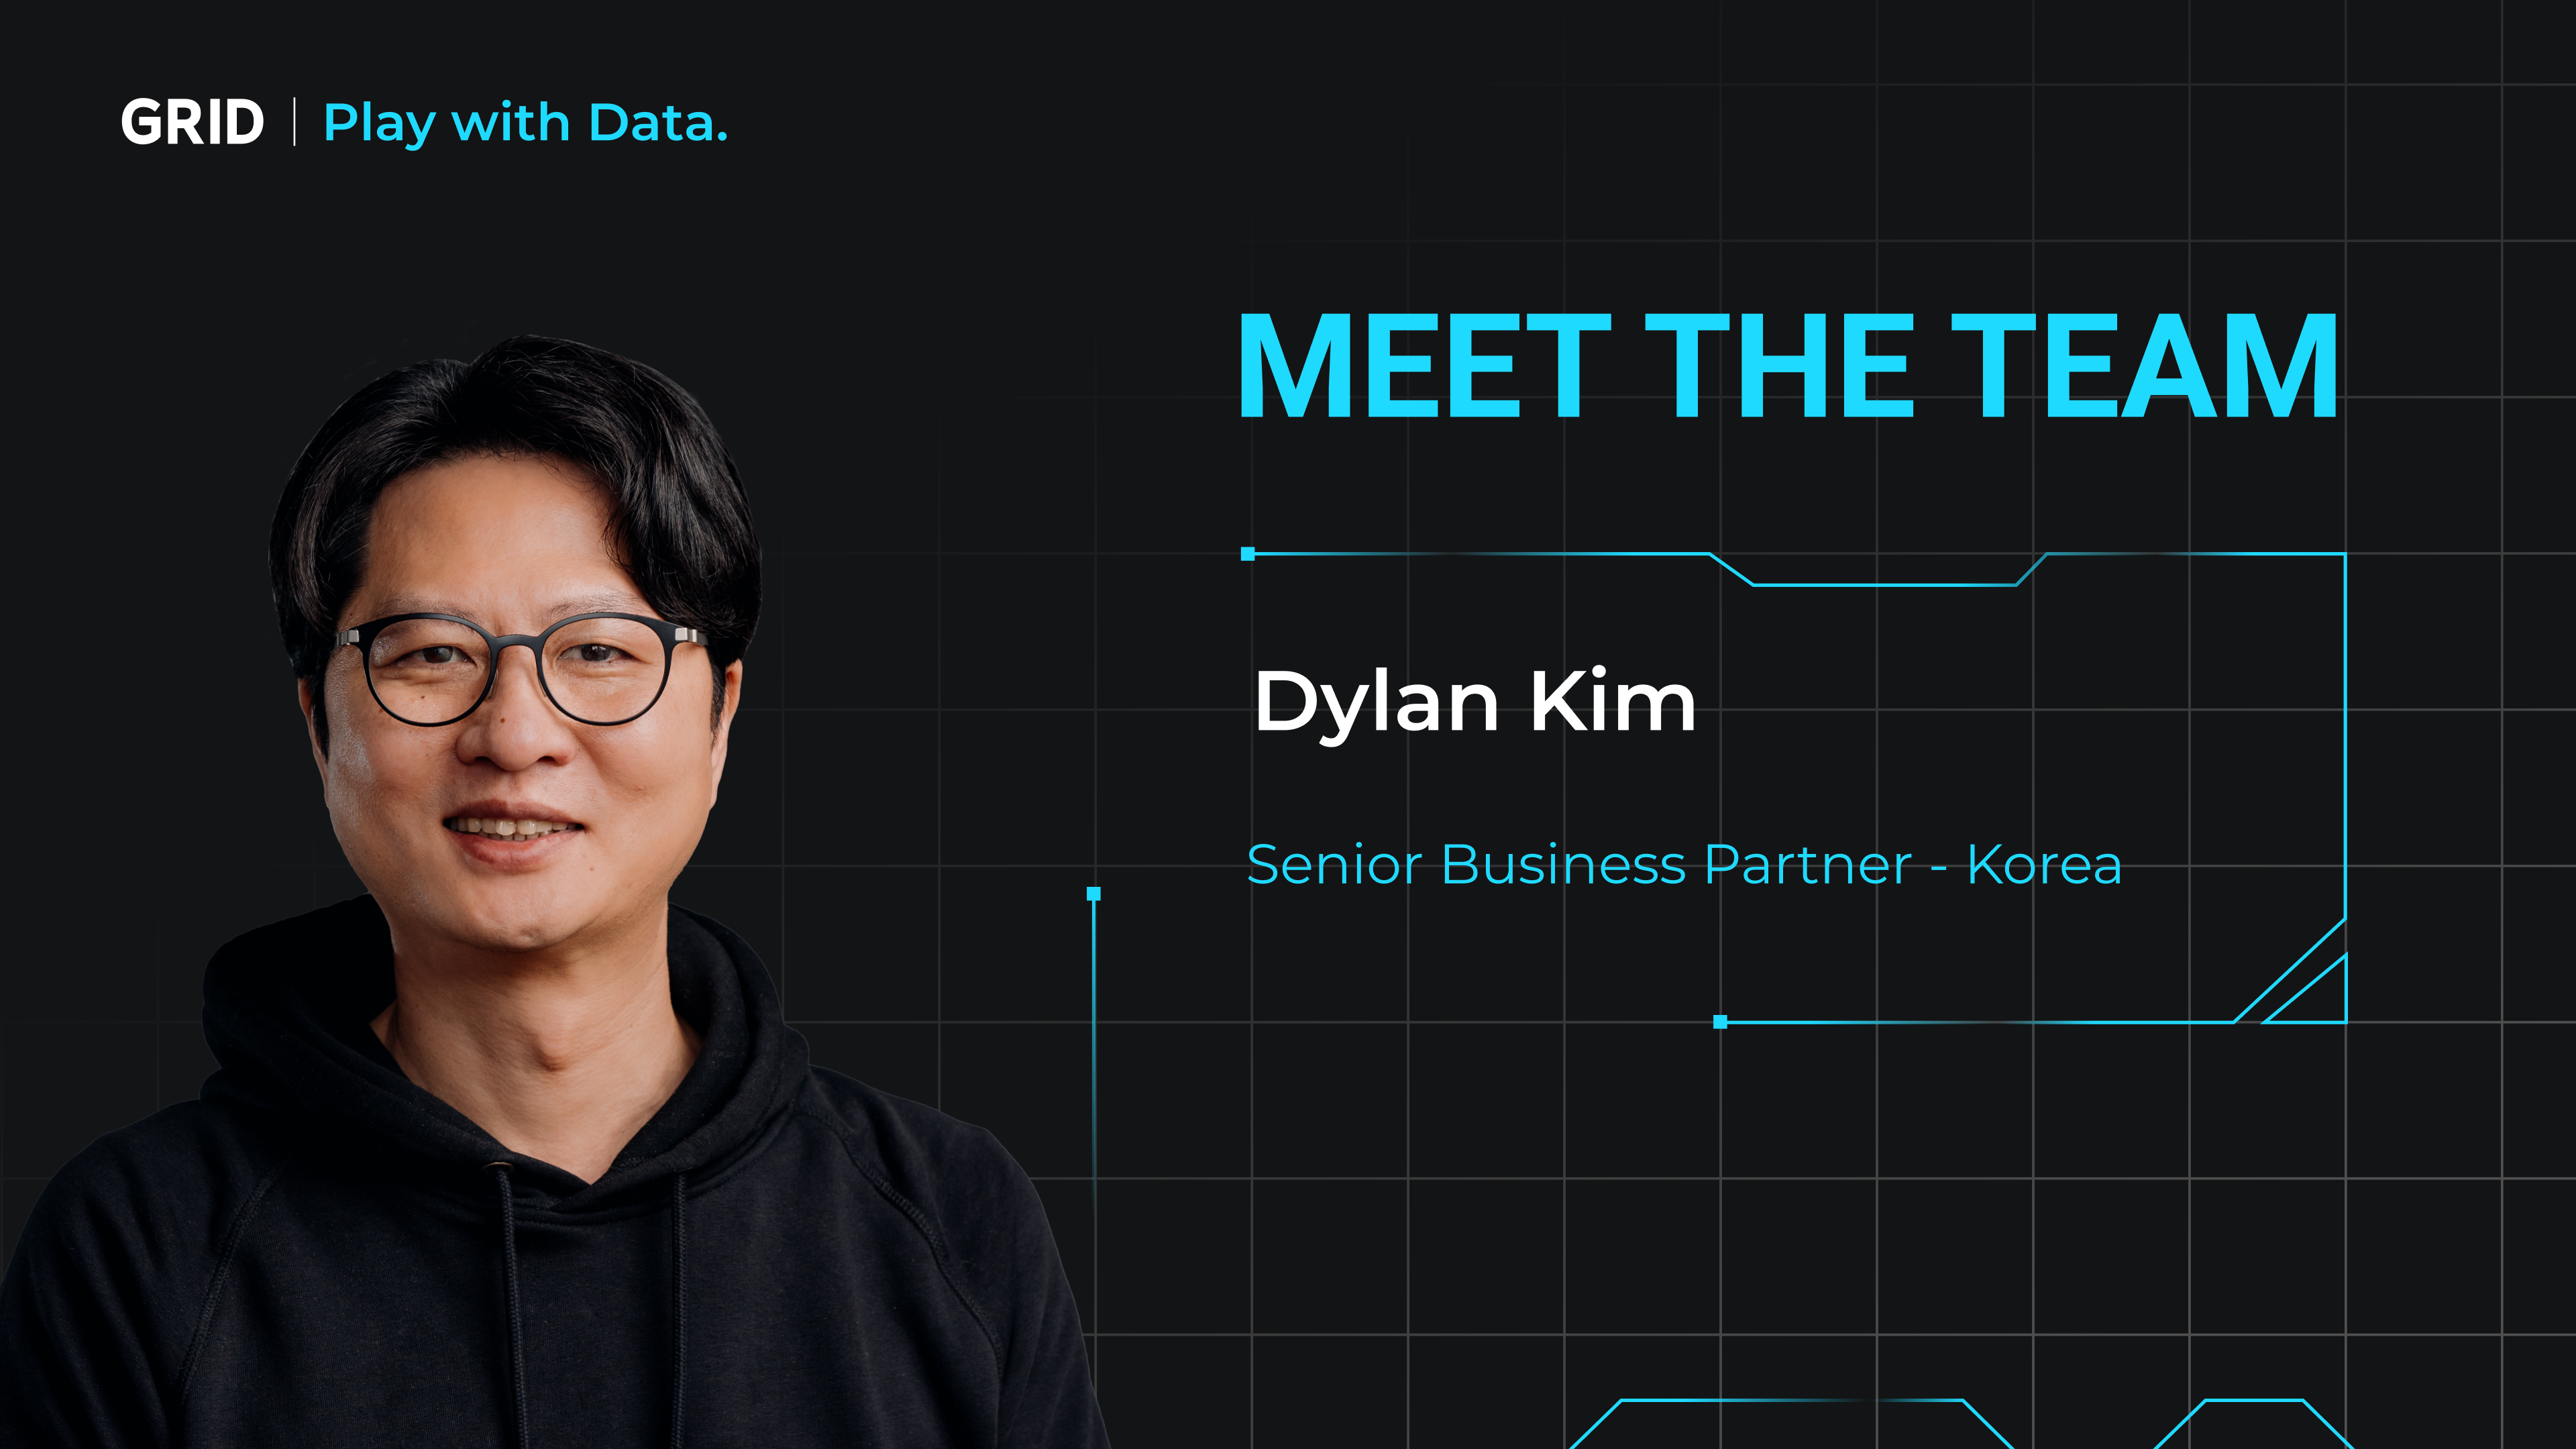 Meet The Team - Dylan Kim,Senior Business Partner - Korea